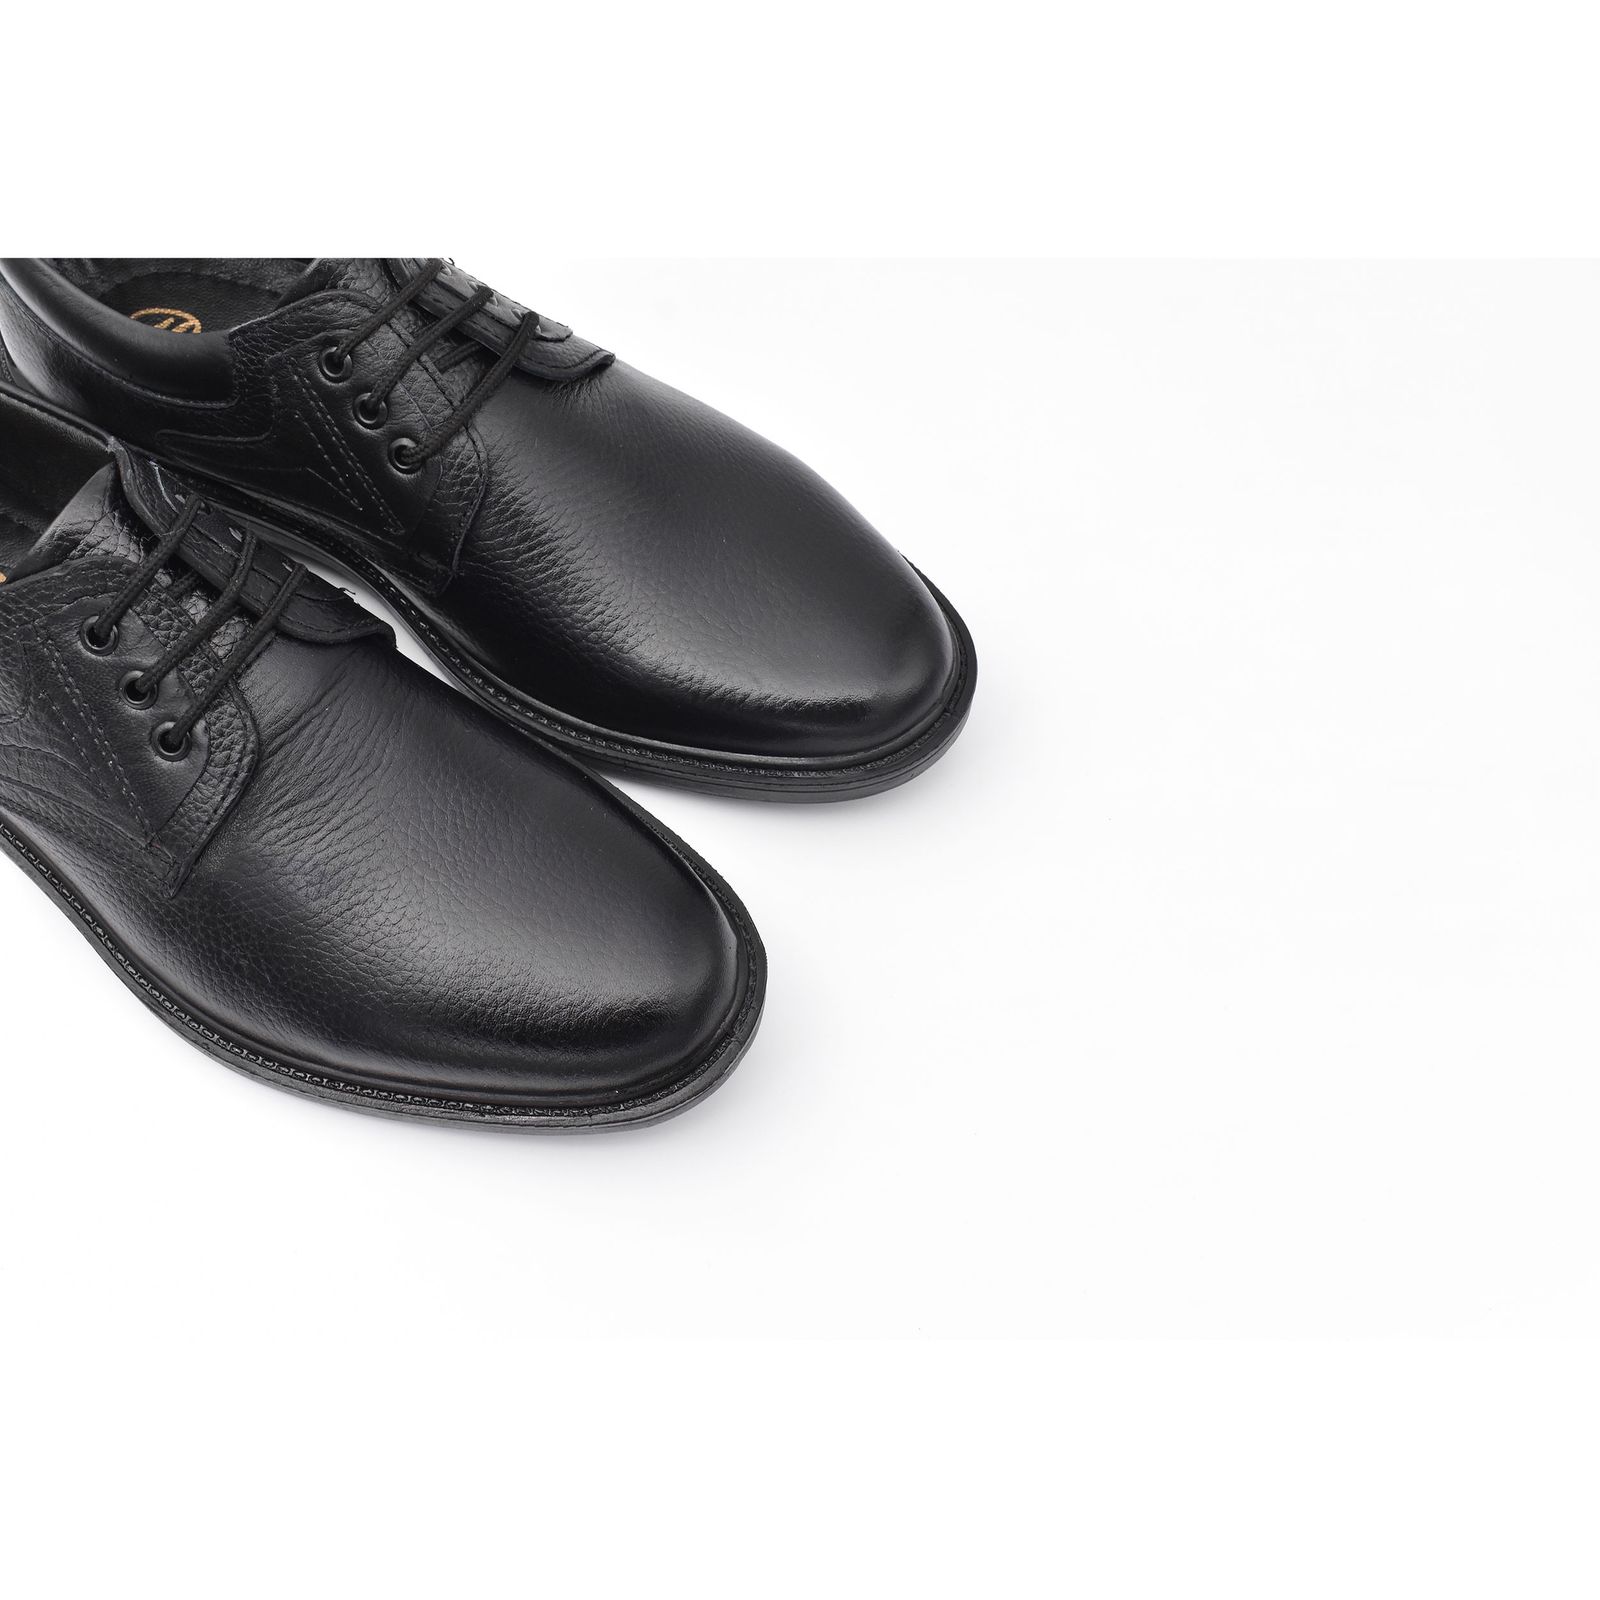 کفش مردانه پاما مدل Morano کد G1174 -  - 3